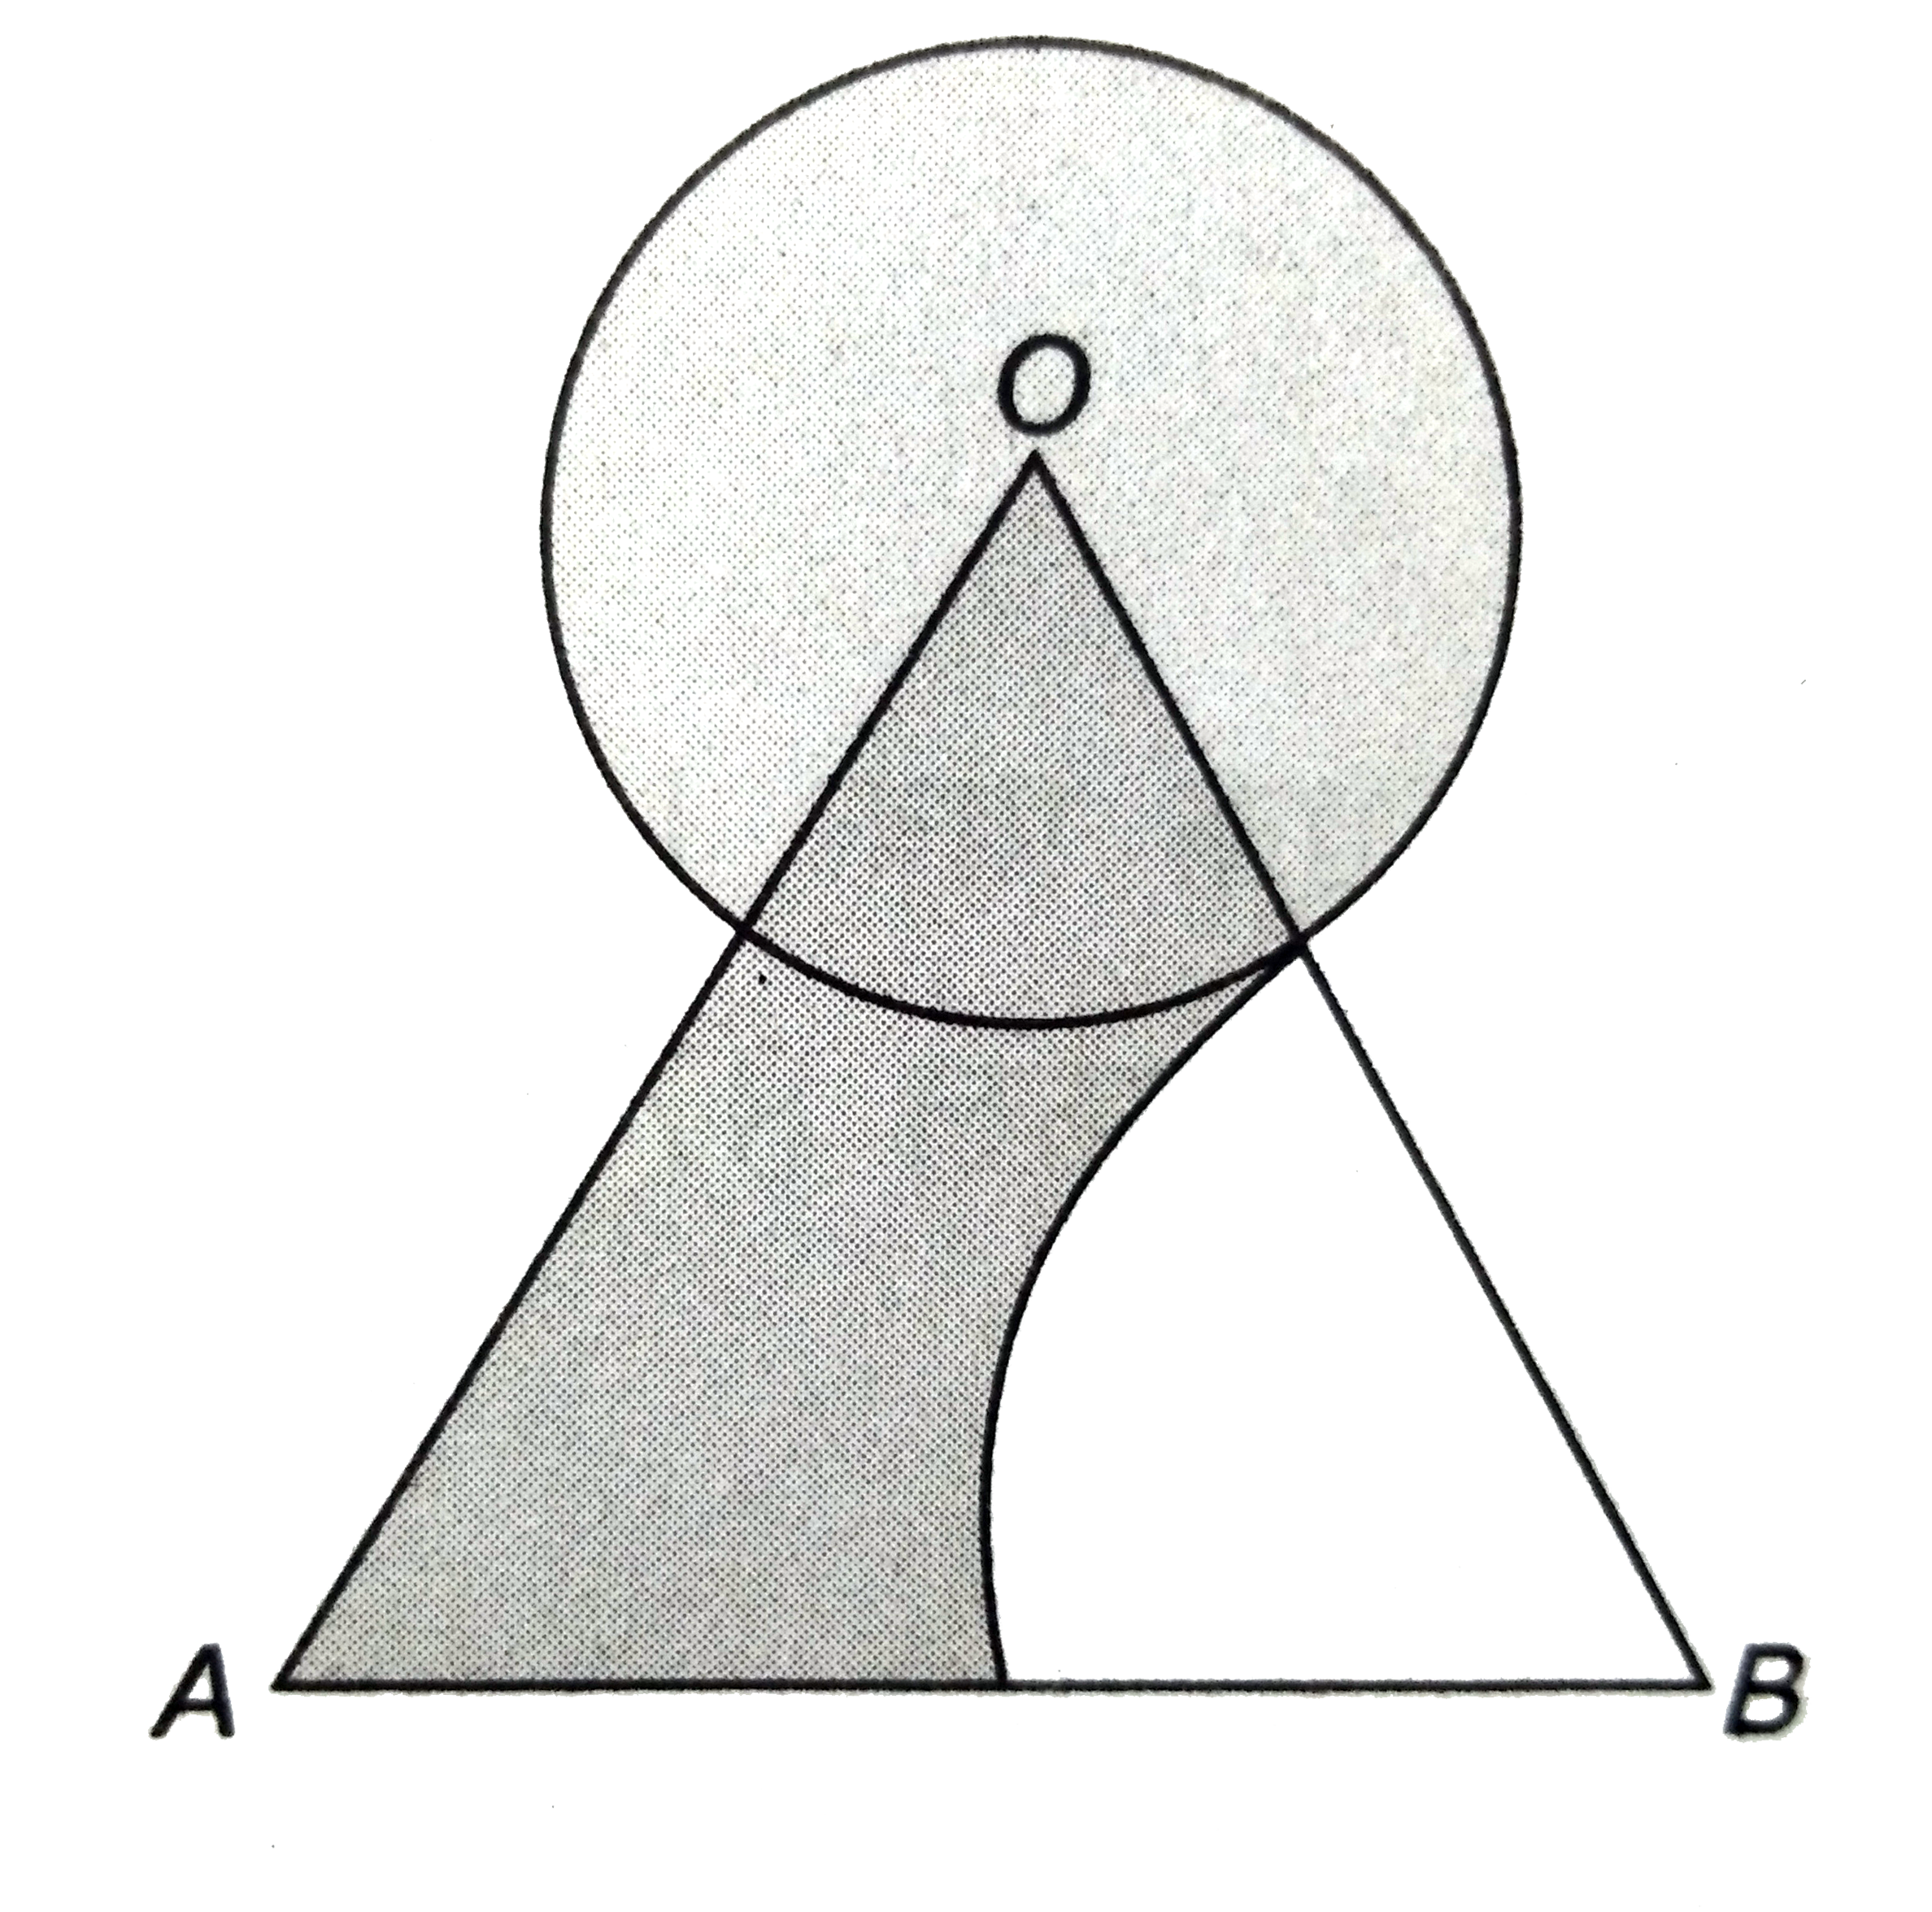 सेमी भुजा के एक समबाहु  त्रिभुज  के शीर्ष  से एक  वृत्ताकार  चाप लगाया गया है । चाप की त्रिज्या  6  सेमी है । DeltaOAB  से  6  सेमी  त्रिज्या  का एक त्रिज्यखंड  काटा गया है । छायांकित  भाग का क्षेत्रफल  ज्ञात कीजिए ।